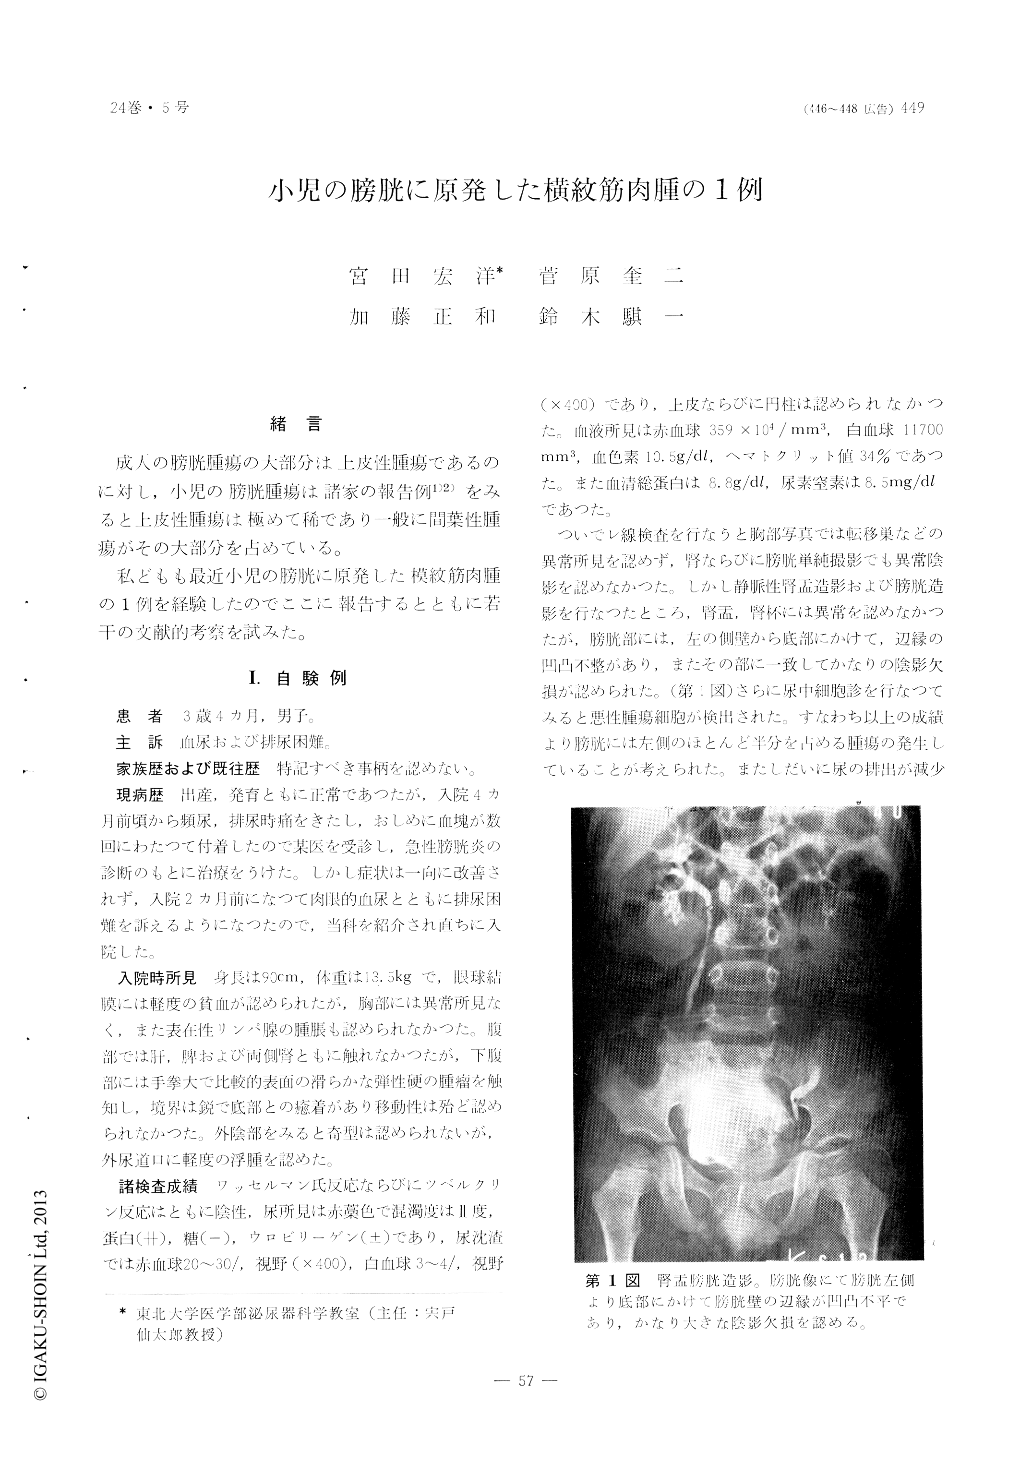 小児の膀胱に原発した横紋筋肉腫の1例 臨床泌尿器科 24巻5号 医書 Jp